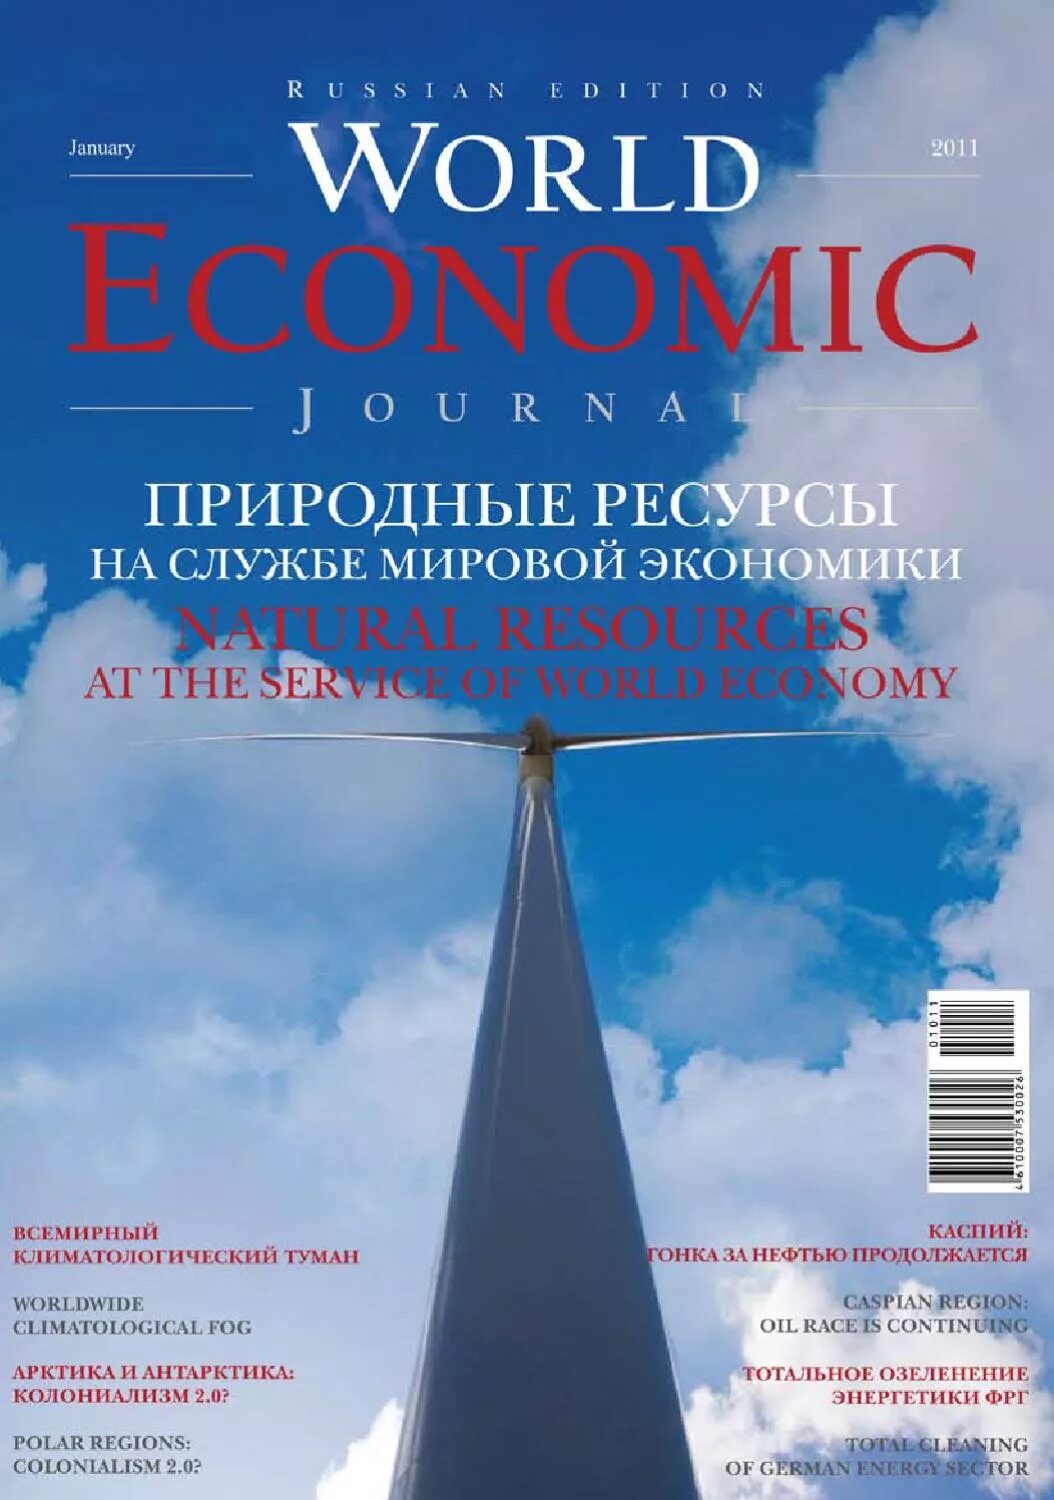 Экономический журнал. Economics журнал. Журнал World. Обложки экономических журналов.